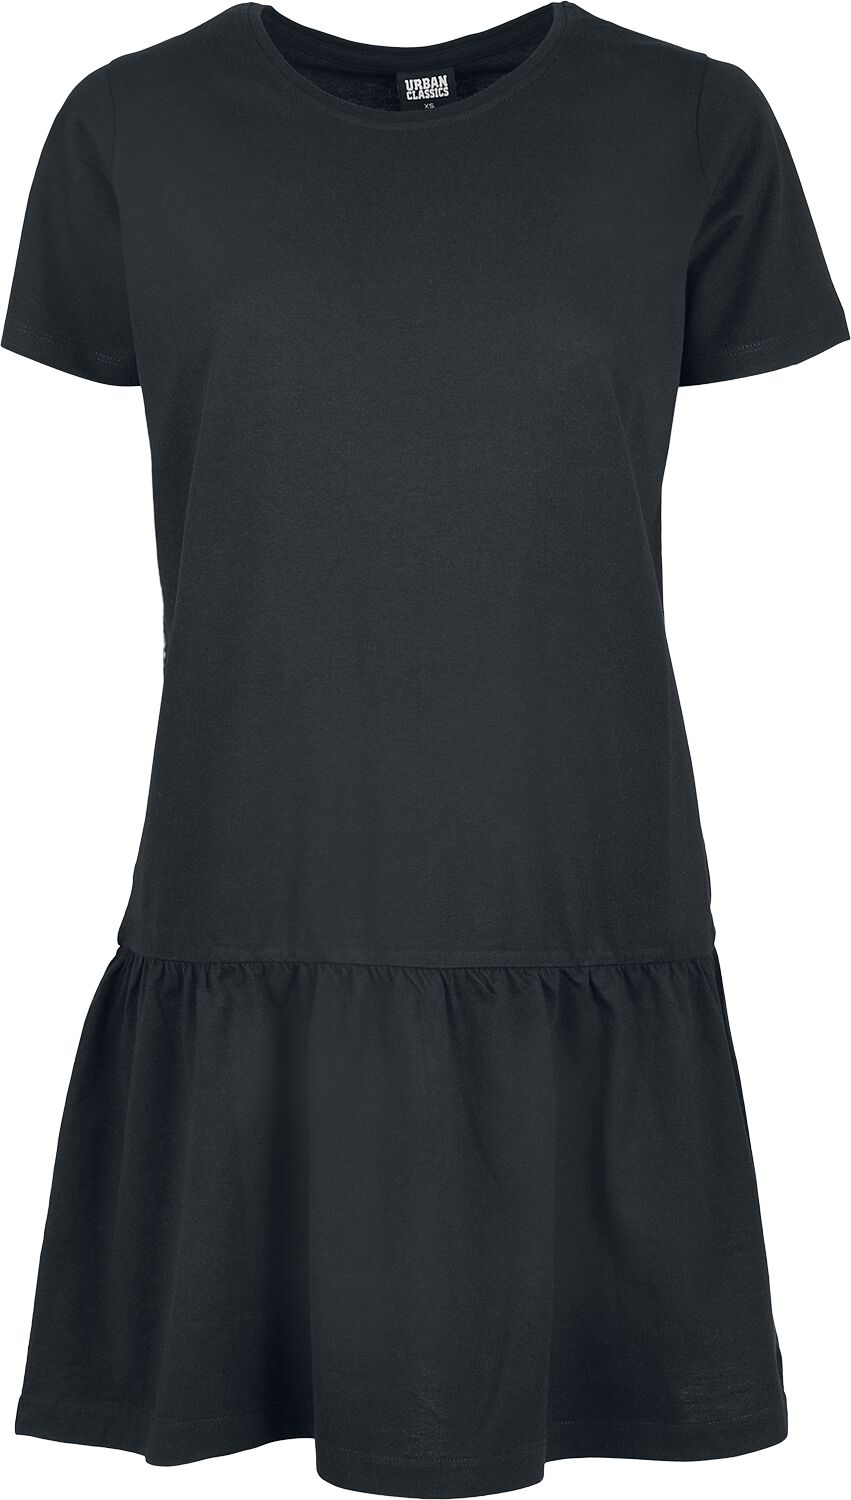 Levně Urban Classics Dámské tričkové šaty Valence Šaty černá